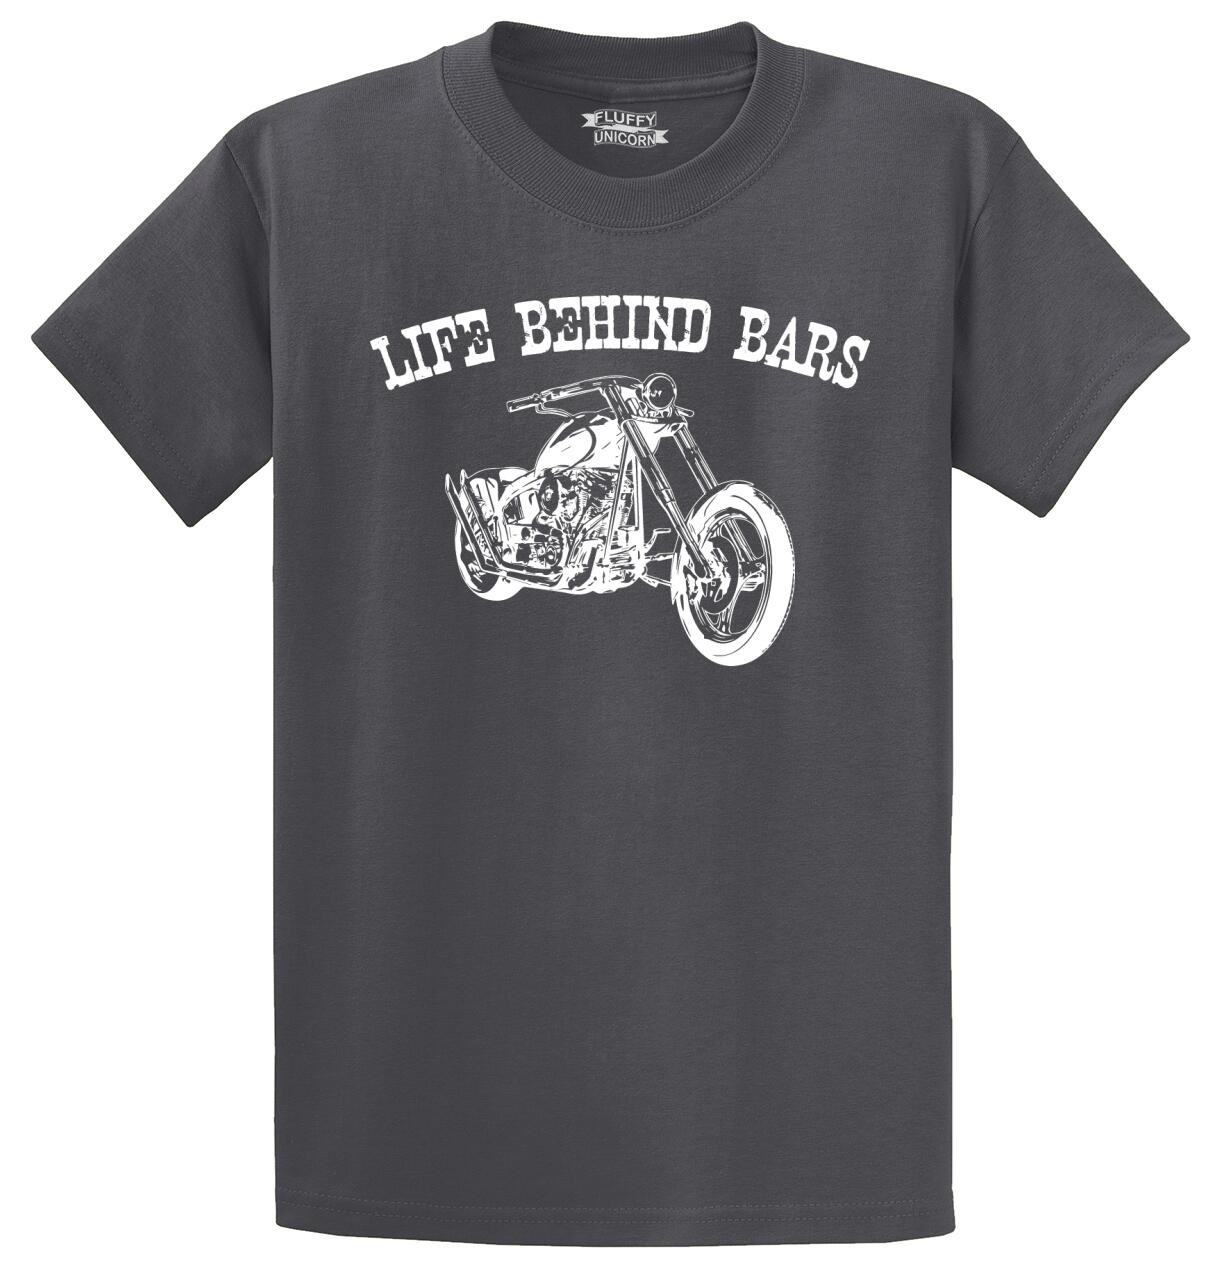 Life Behind Bars Motorcycle Mens And Womens Tee Shirts And Tank Tops Comical Shirt 